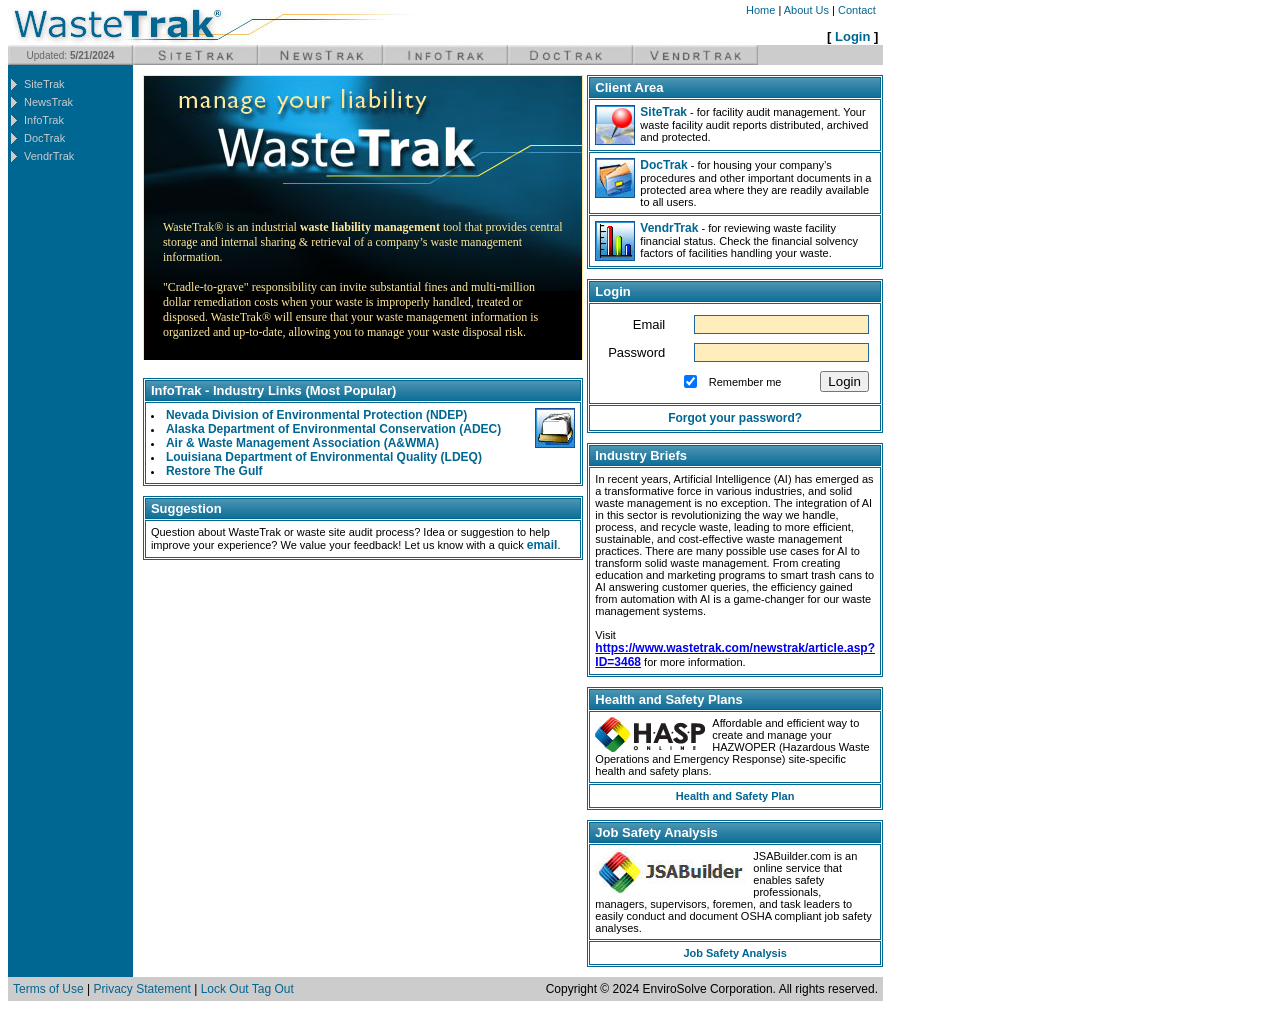 wastetrak.com